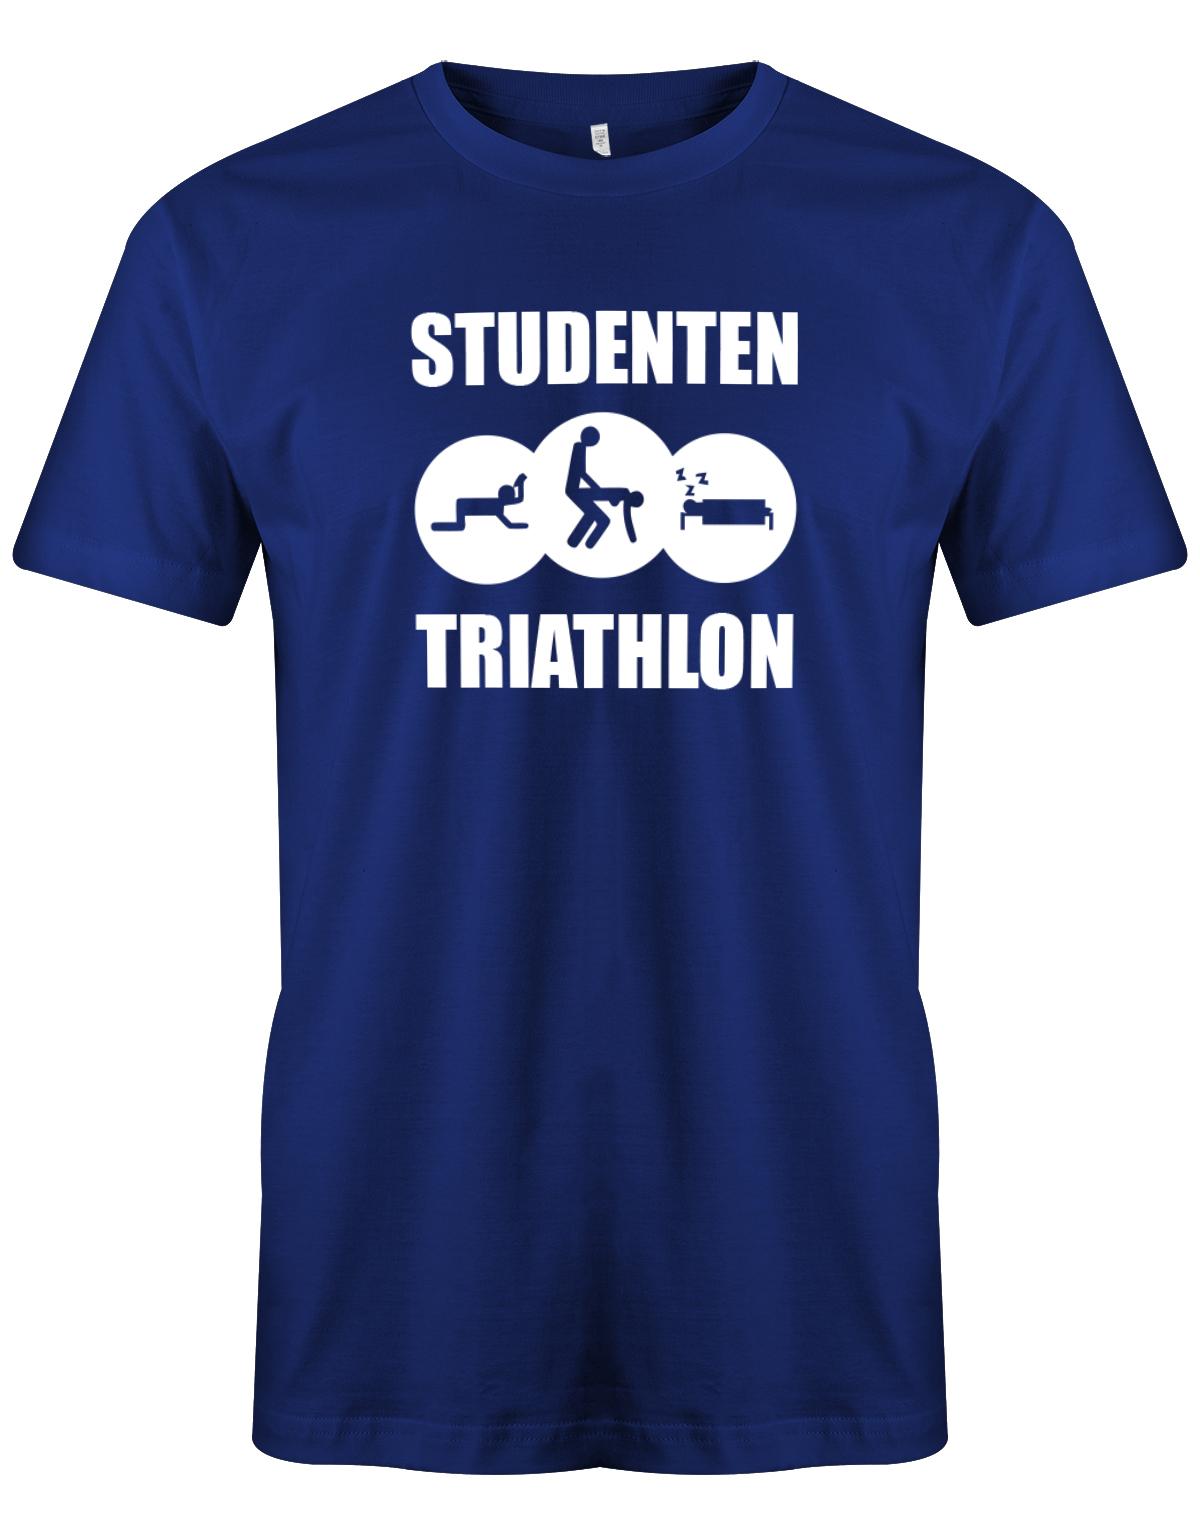 Studenten-Triahtlon-Herren-Shirt-Royalblau